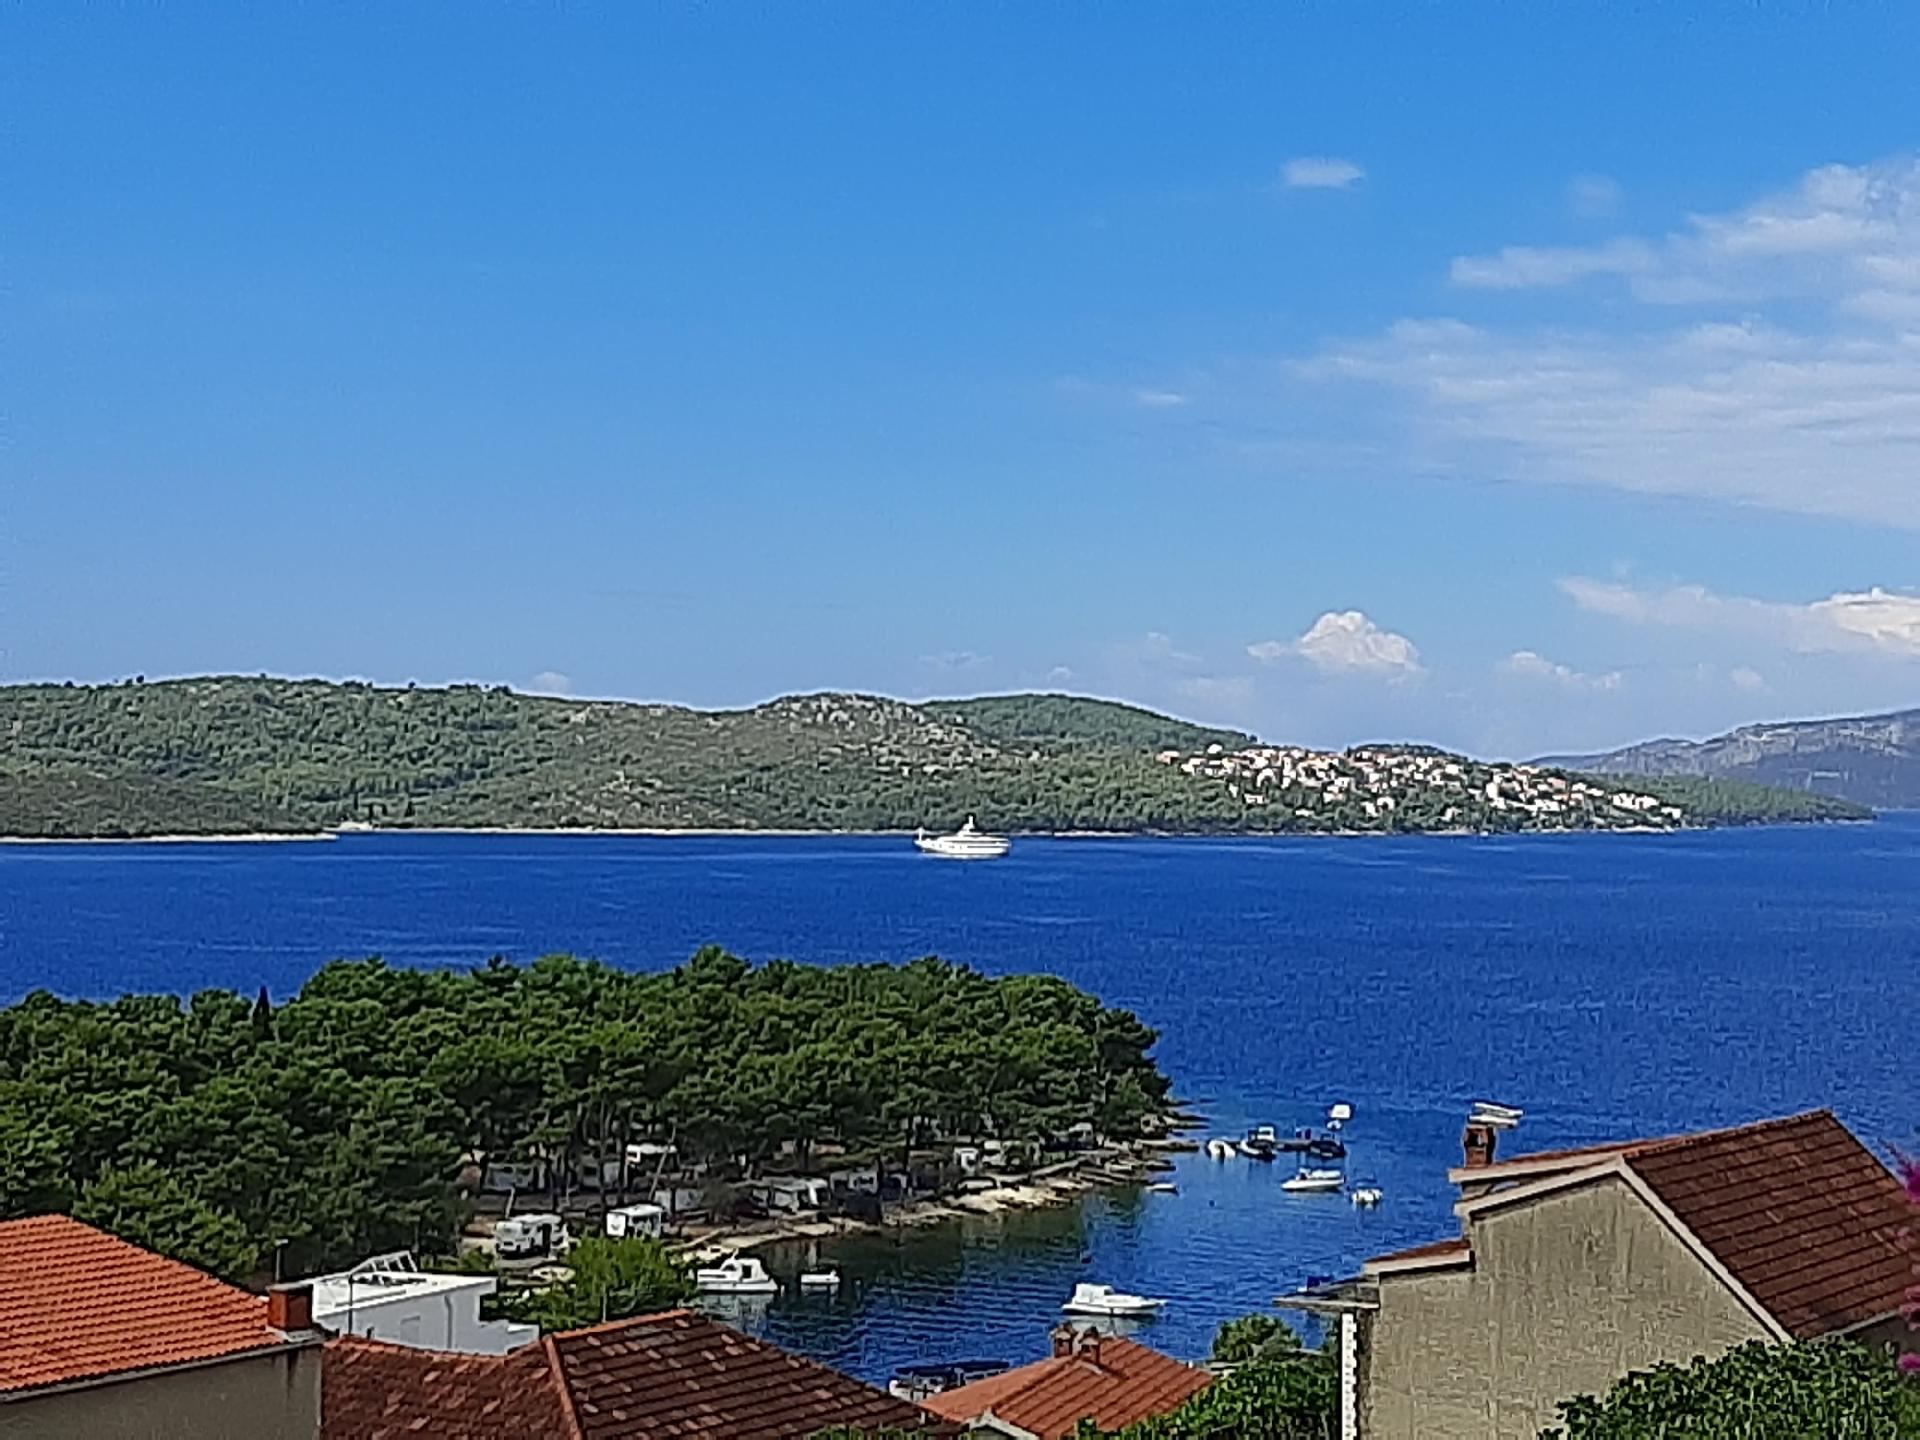 Ferienwohnung mit Meerblick von der Terrasse f&uum Ferienhaus in Dalmatien